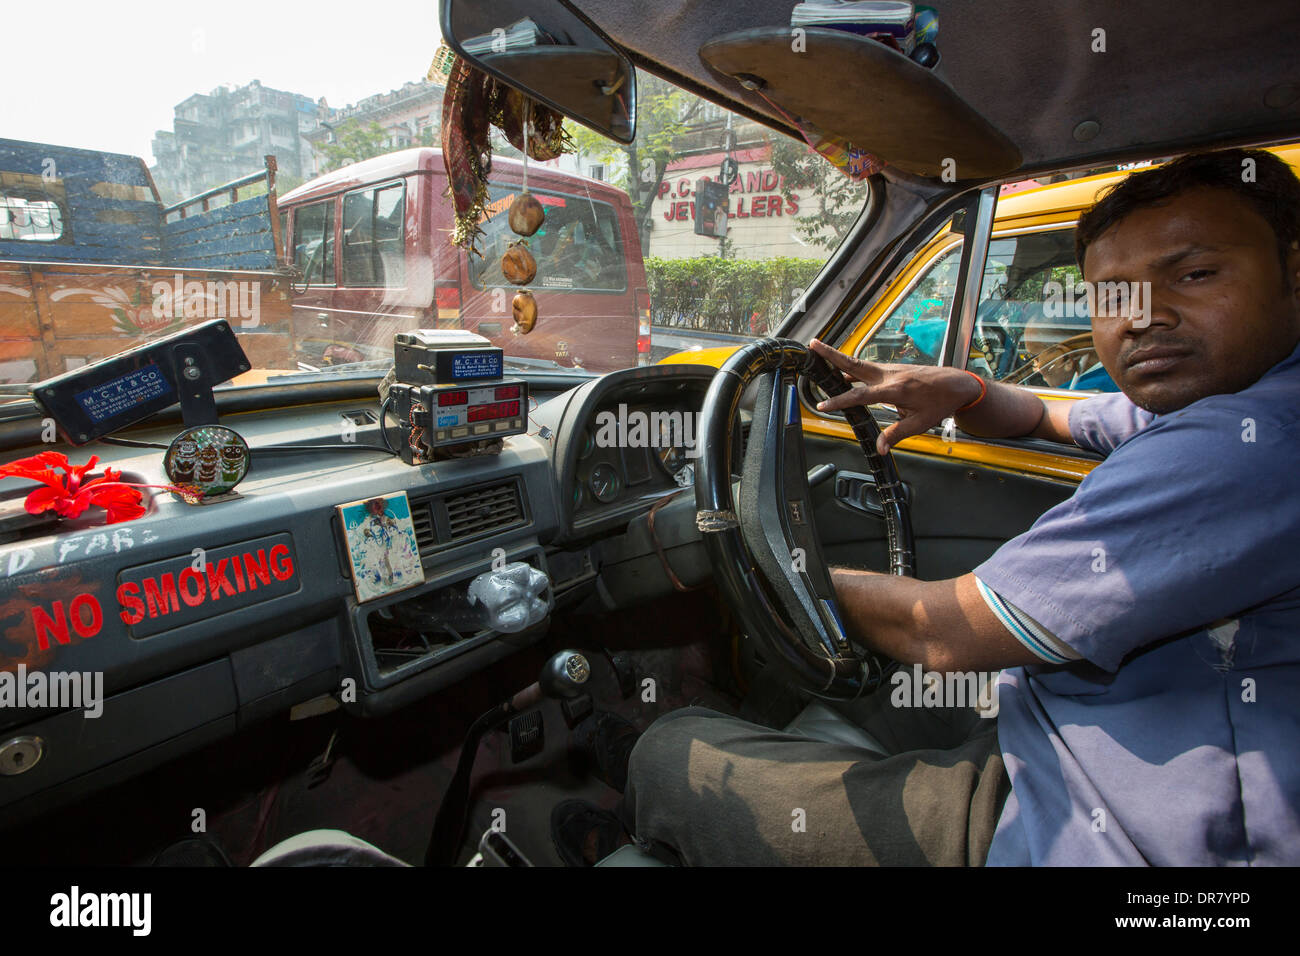 A taxi stuck in a traffic jam in Calcutta, India. Stock Photo